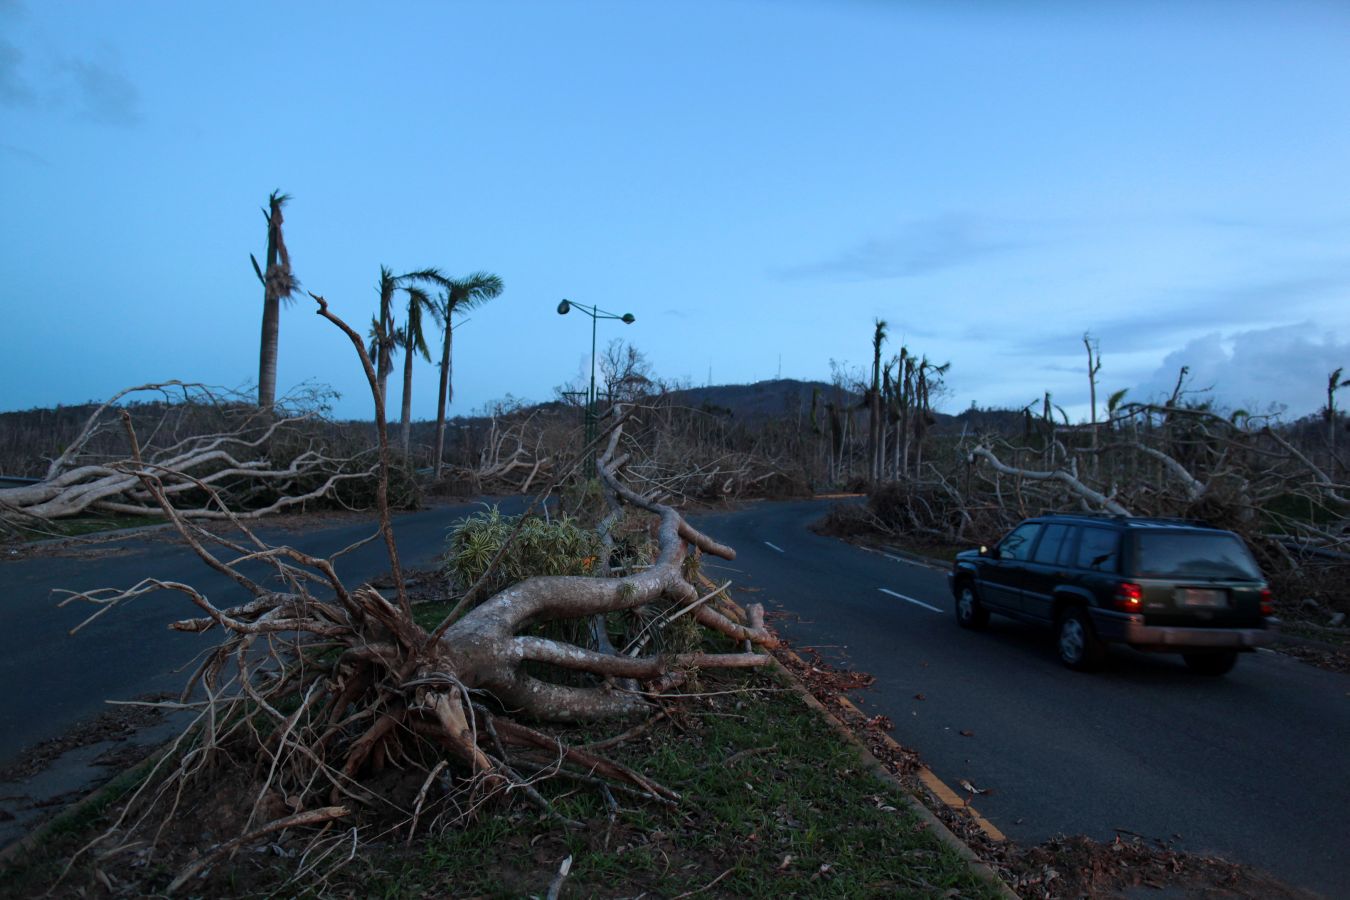 La isla quedó devastada tras el paso del huracán. Hay localidades que aún no tienen luz ni agua potable y los accesos por carretera son complicados en algunos puntos. Las imágenes hablan por sí solas